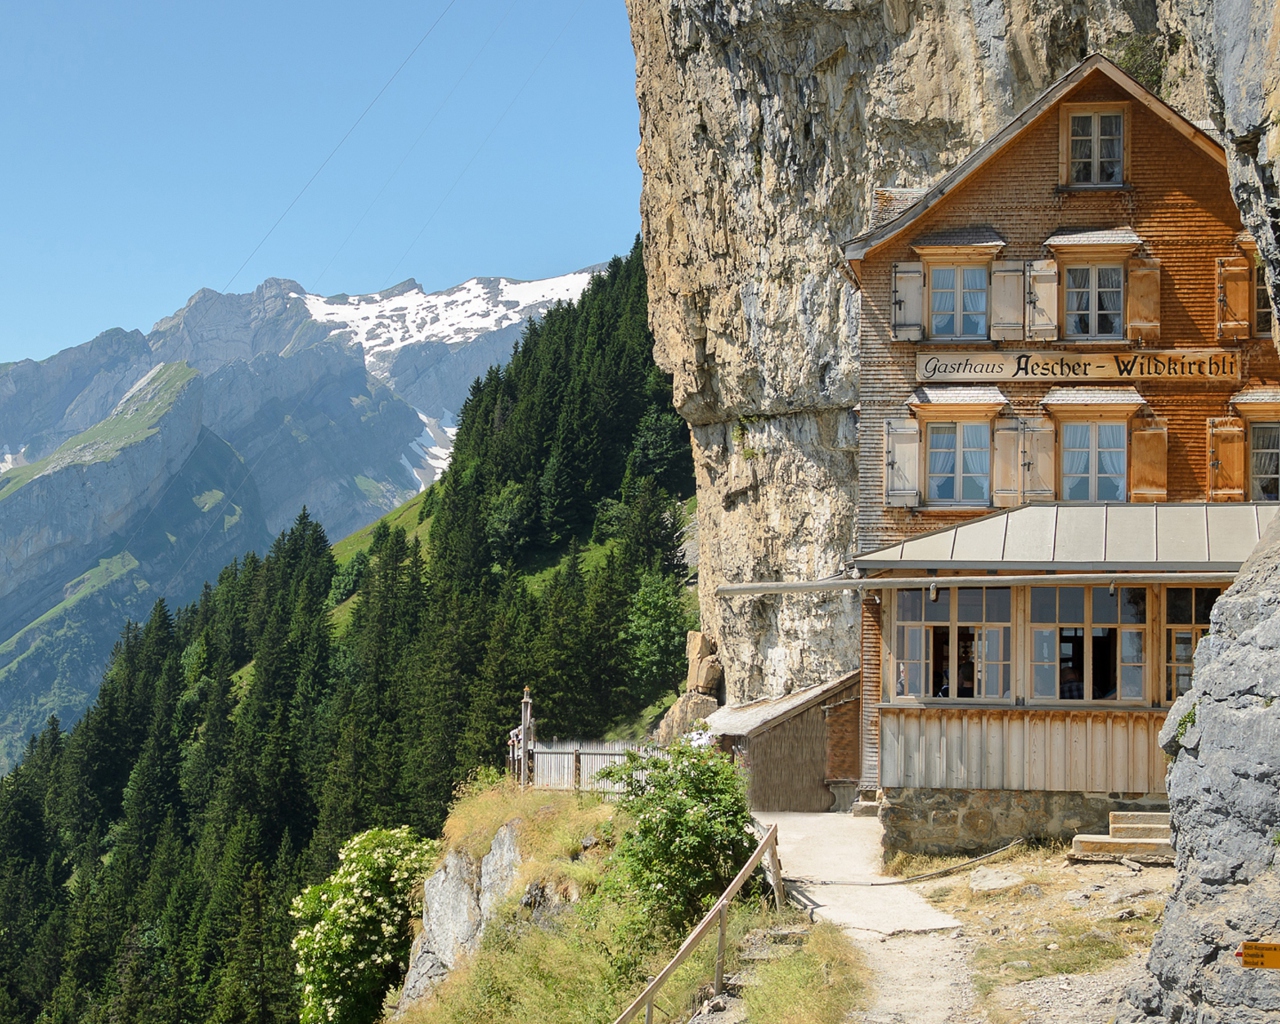 Gasthaus in Schweiz wallpaper 1280x1024